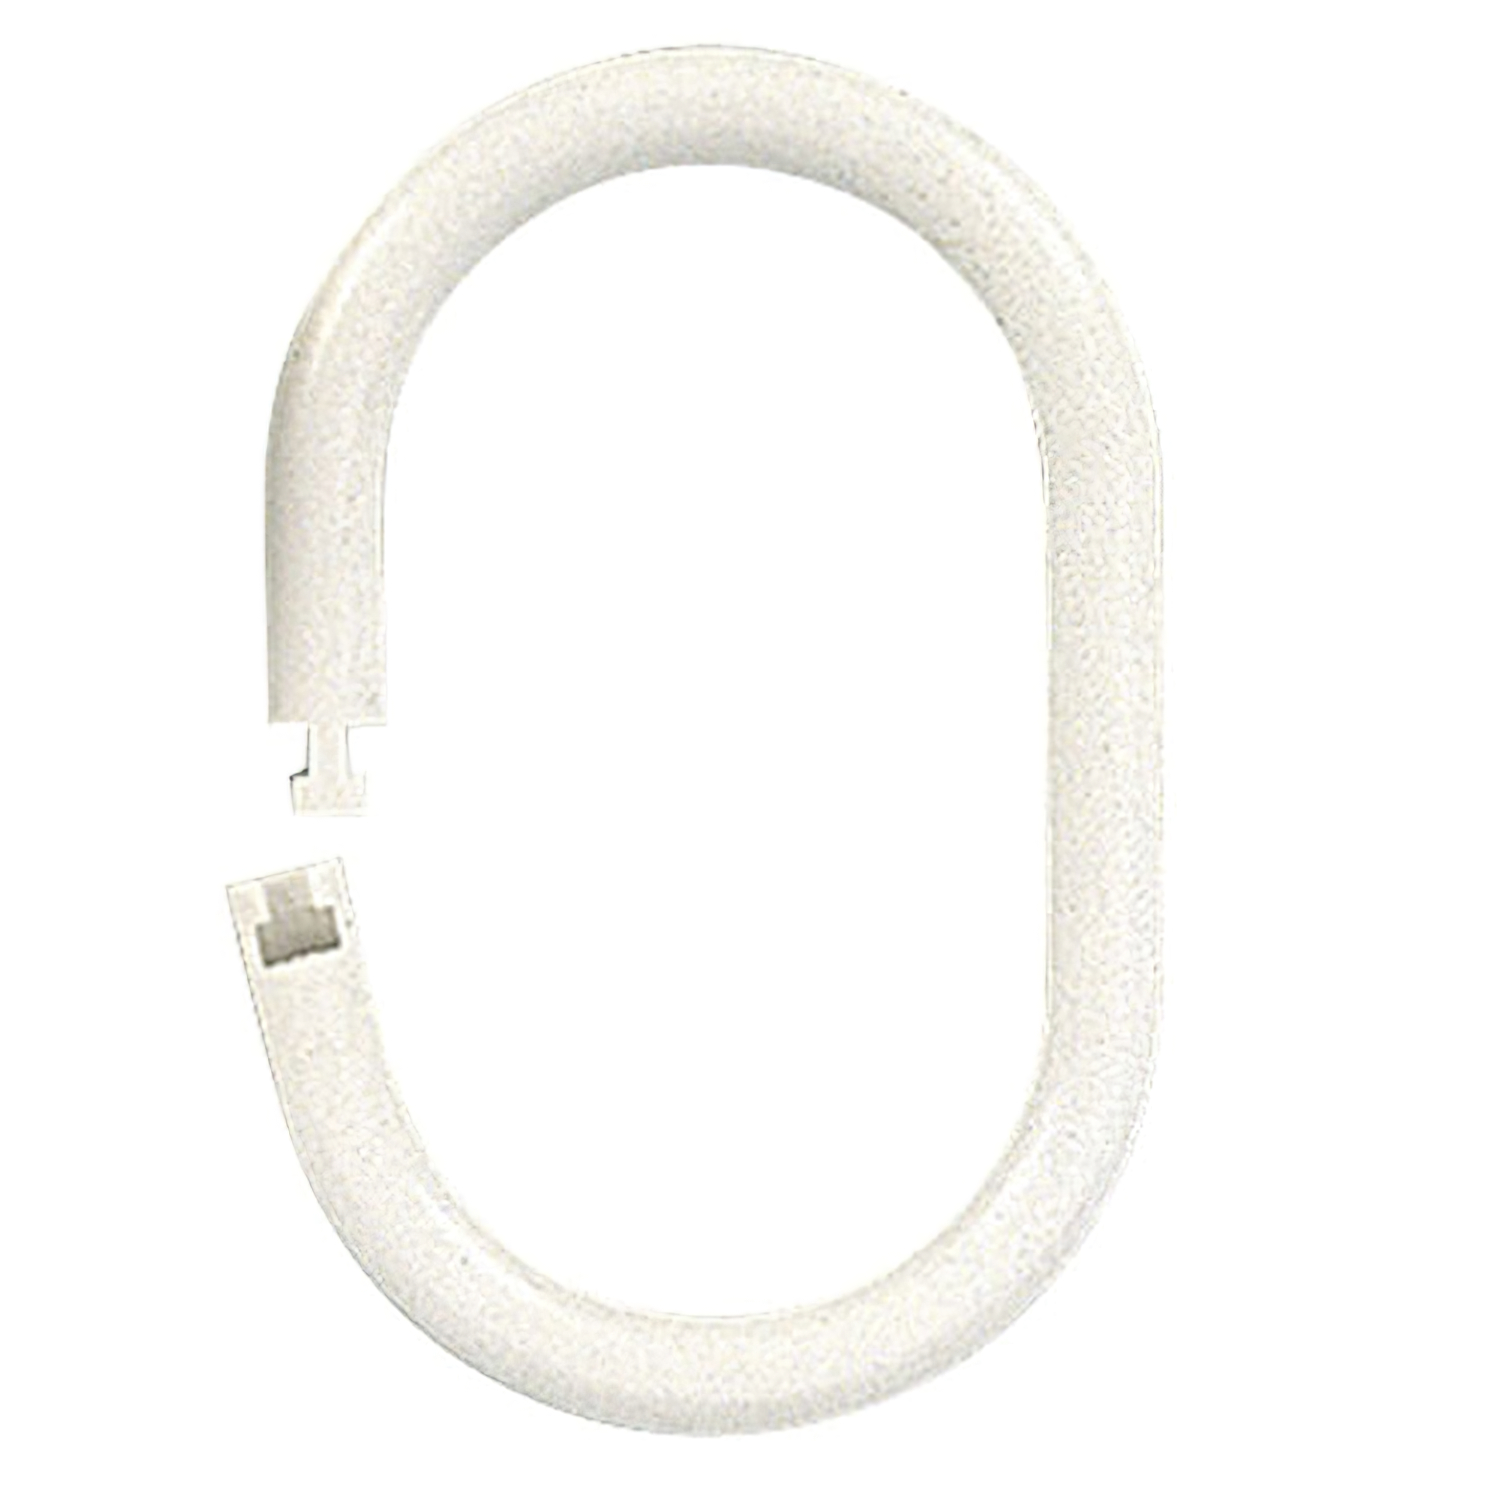 Anilla Bao Oval 18 mm, (Bolsa 100 Unidades) Blanca